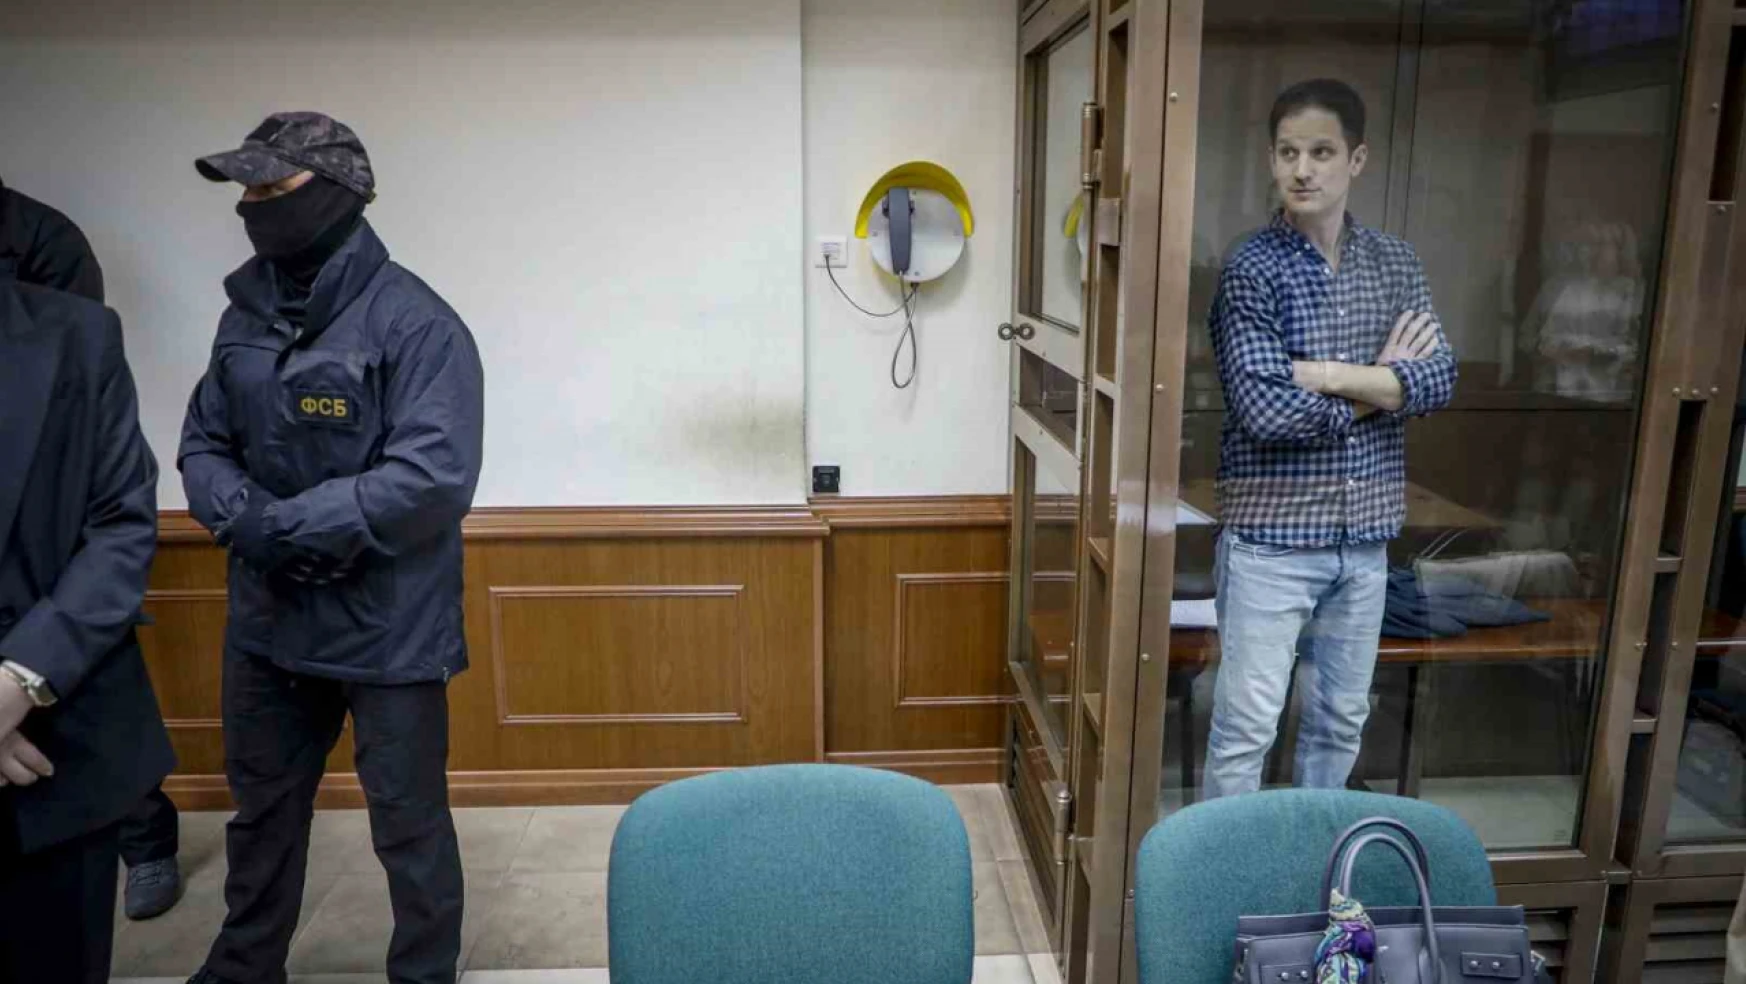 Rusya'da casuslukla suçlanan Wall Street Journal muhabirinin tutukluluk süresi 3 ay uzatıldı